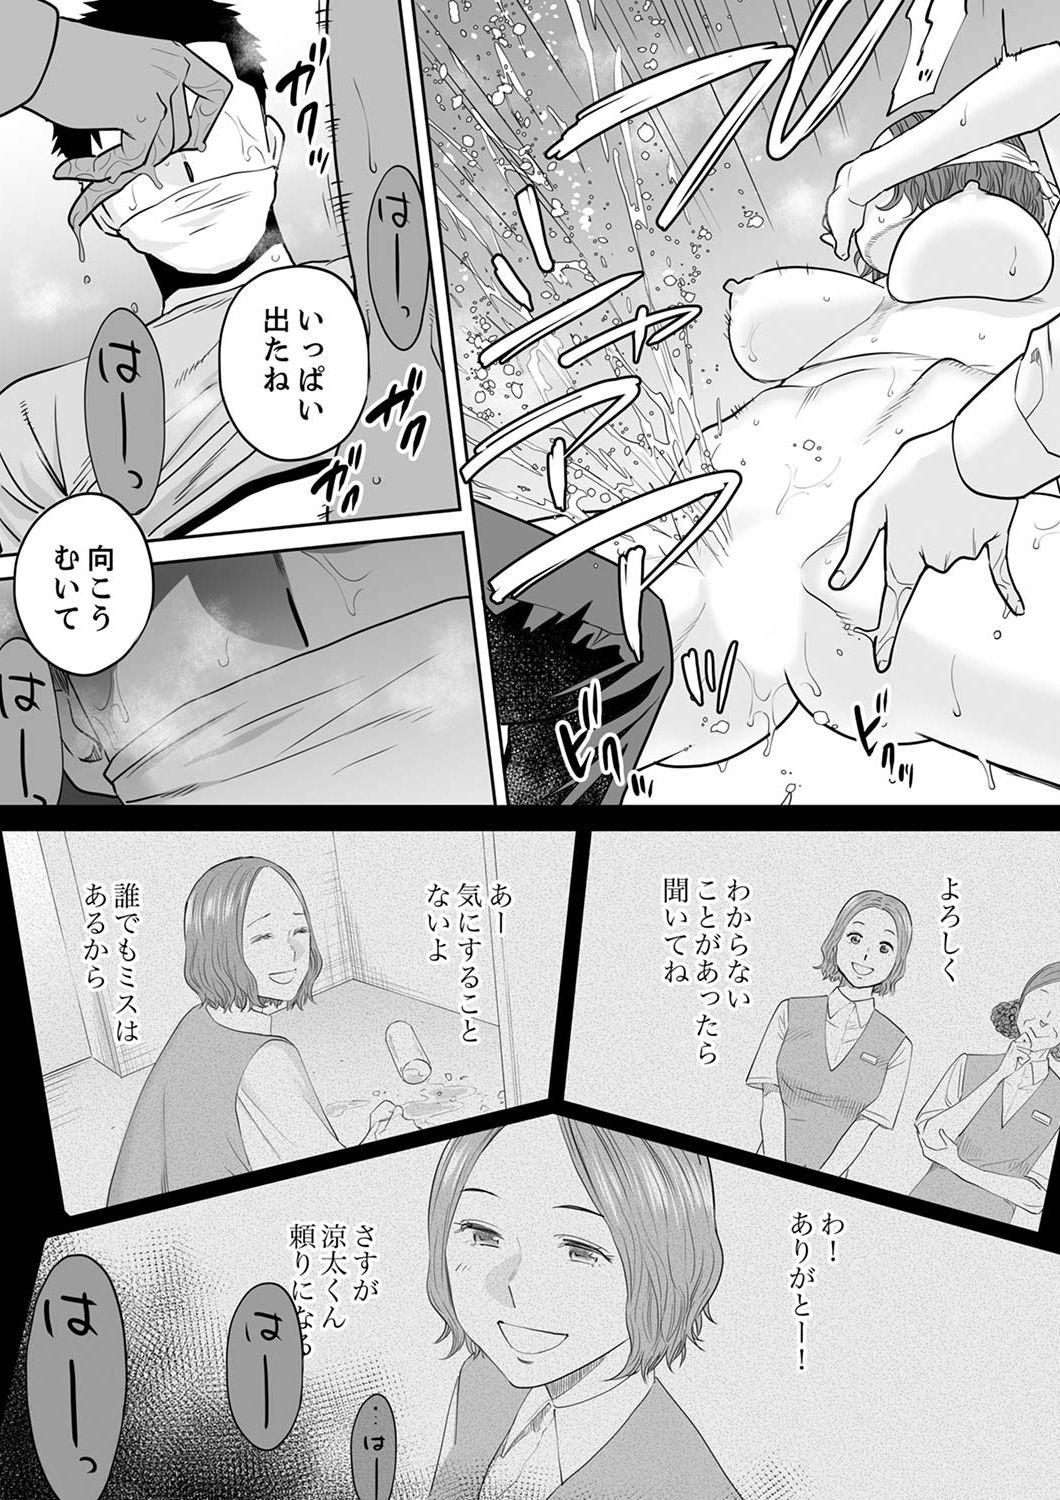 Banheiro "Otto no Buka ni Ikasarechau..." Aragaezu Kanjite Shimau Furinzuma 12 Rubdown - Page 9